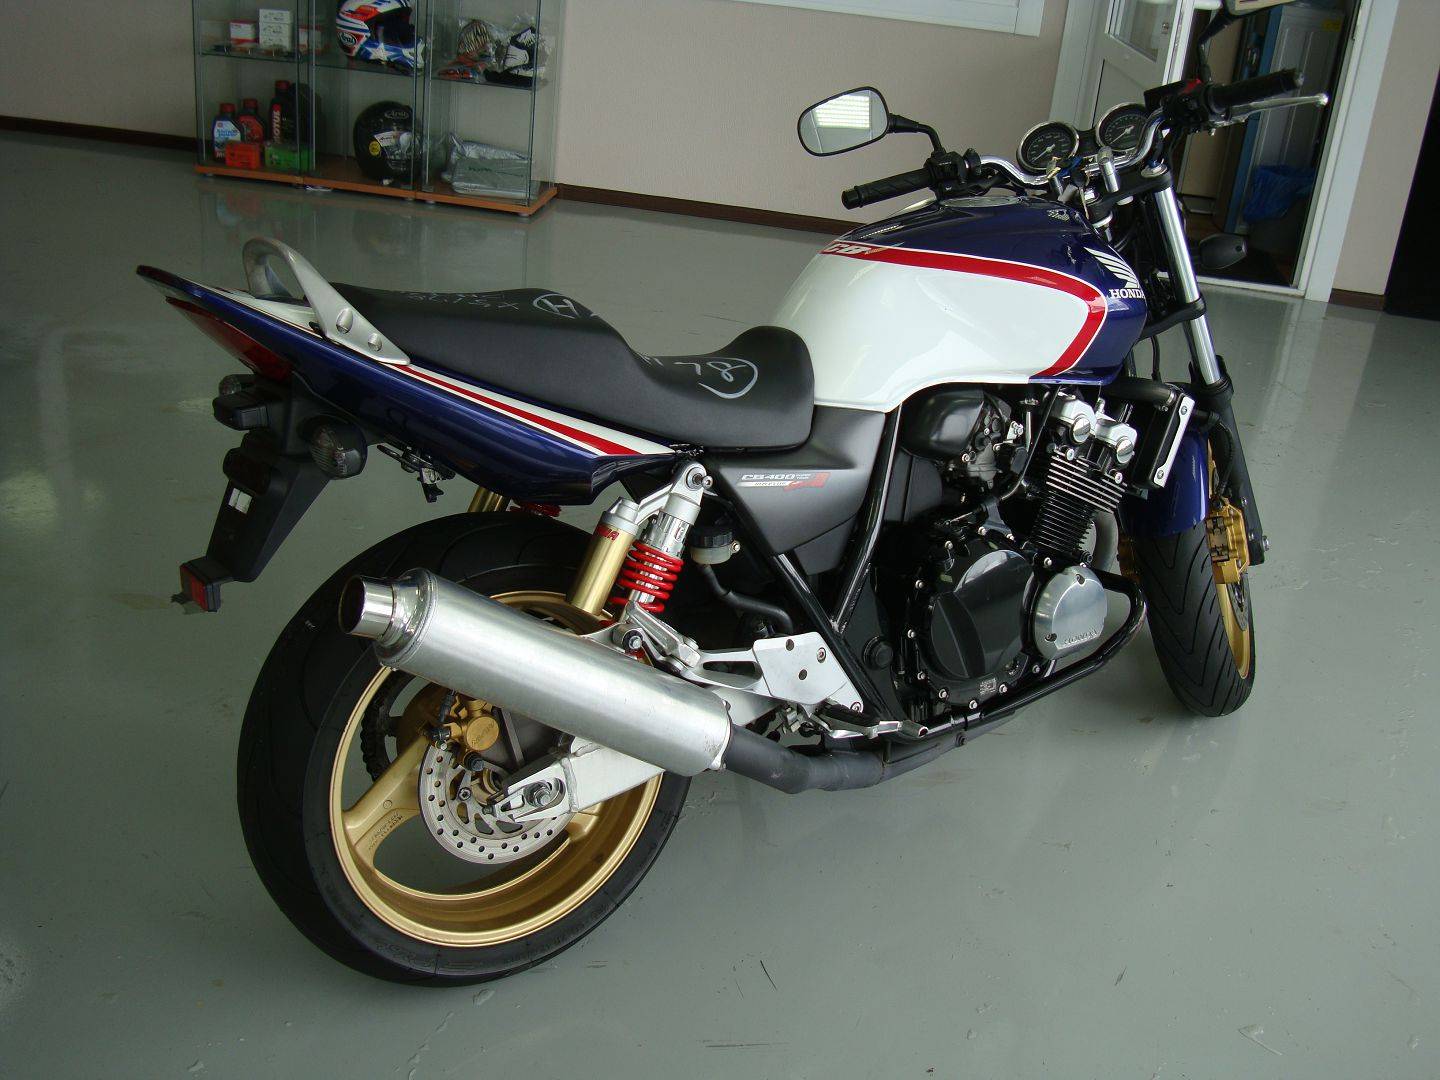 Honda cb 400 super four "фура" - лучший дорожный мотоцикл 400 кубов